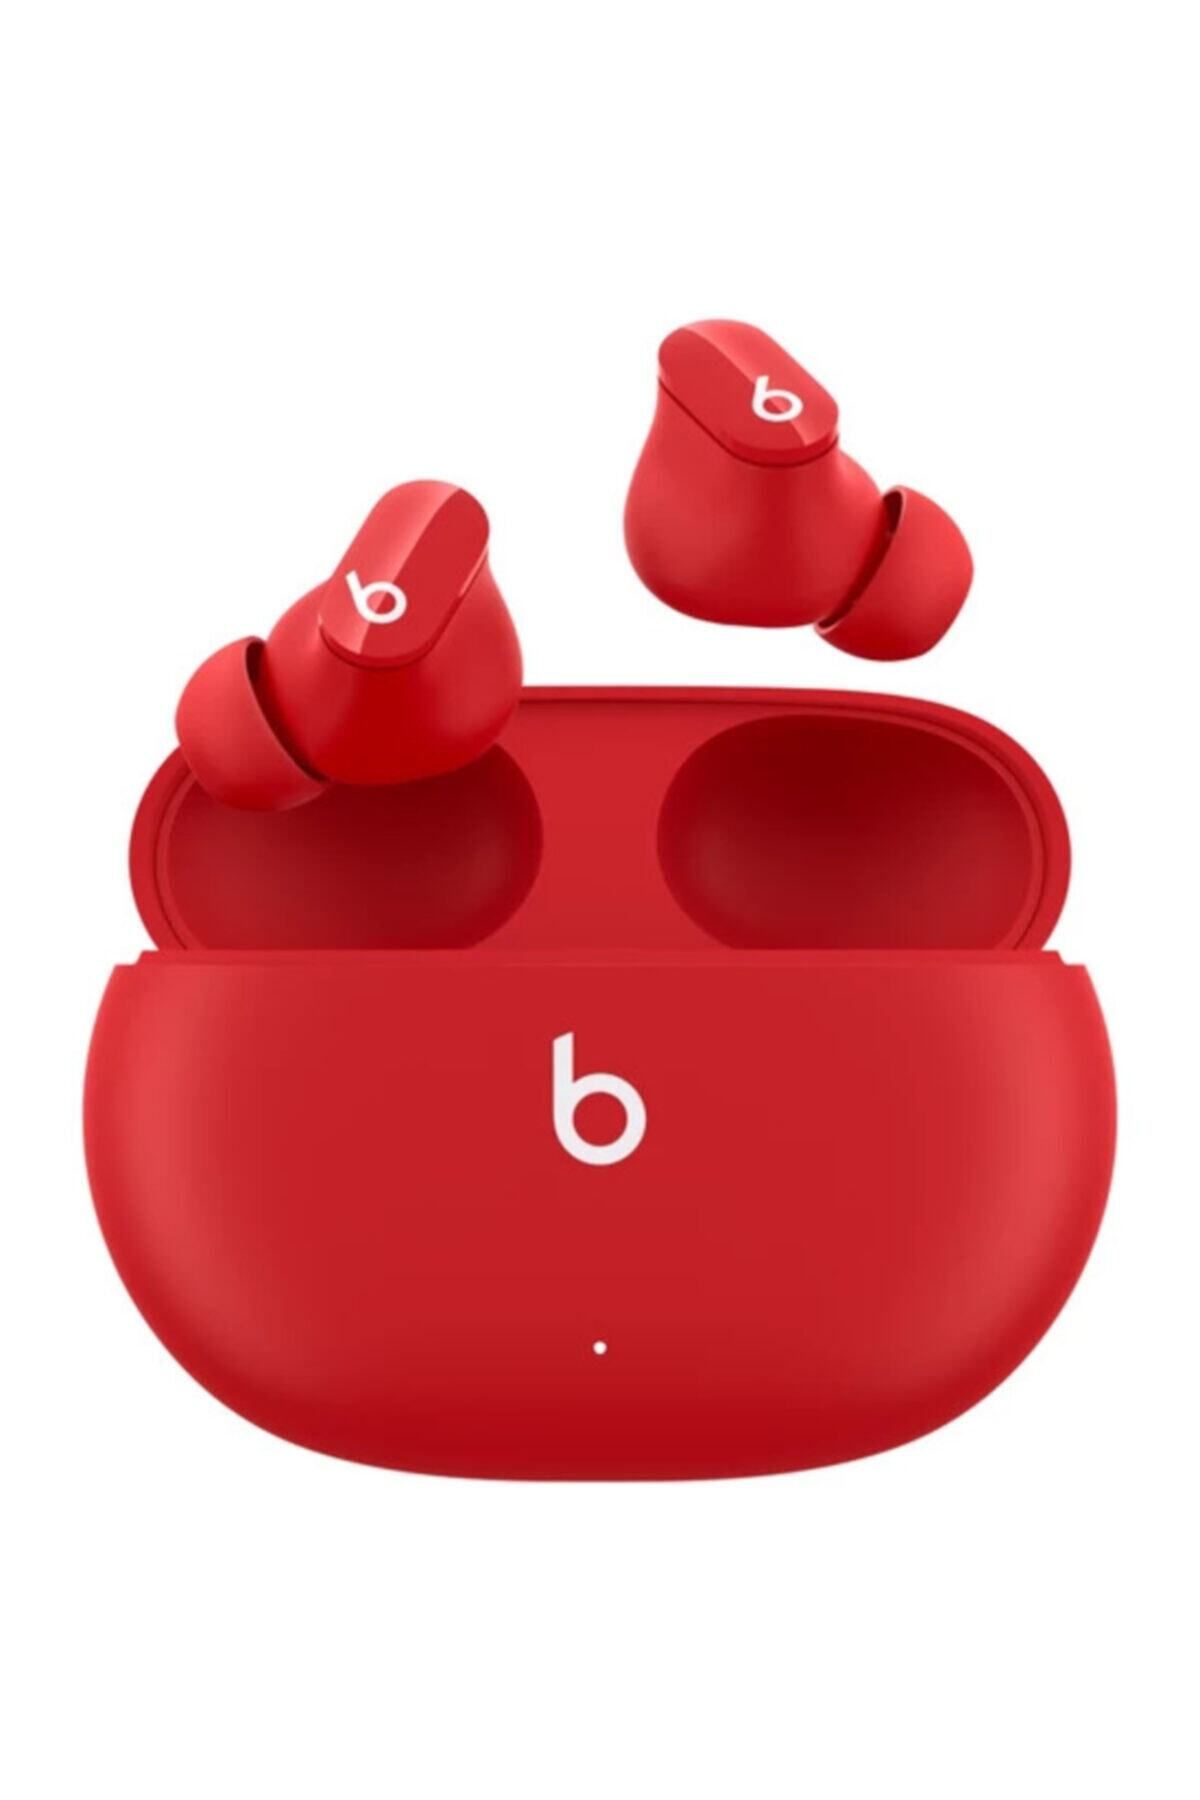 Beats Studio Buds Kırmızı Gürültü Önleme Özellikli Gerçek Kablosuz Kulak I?çi Kulaklık